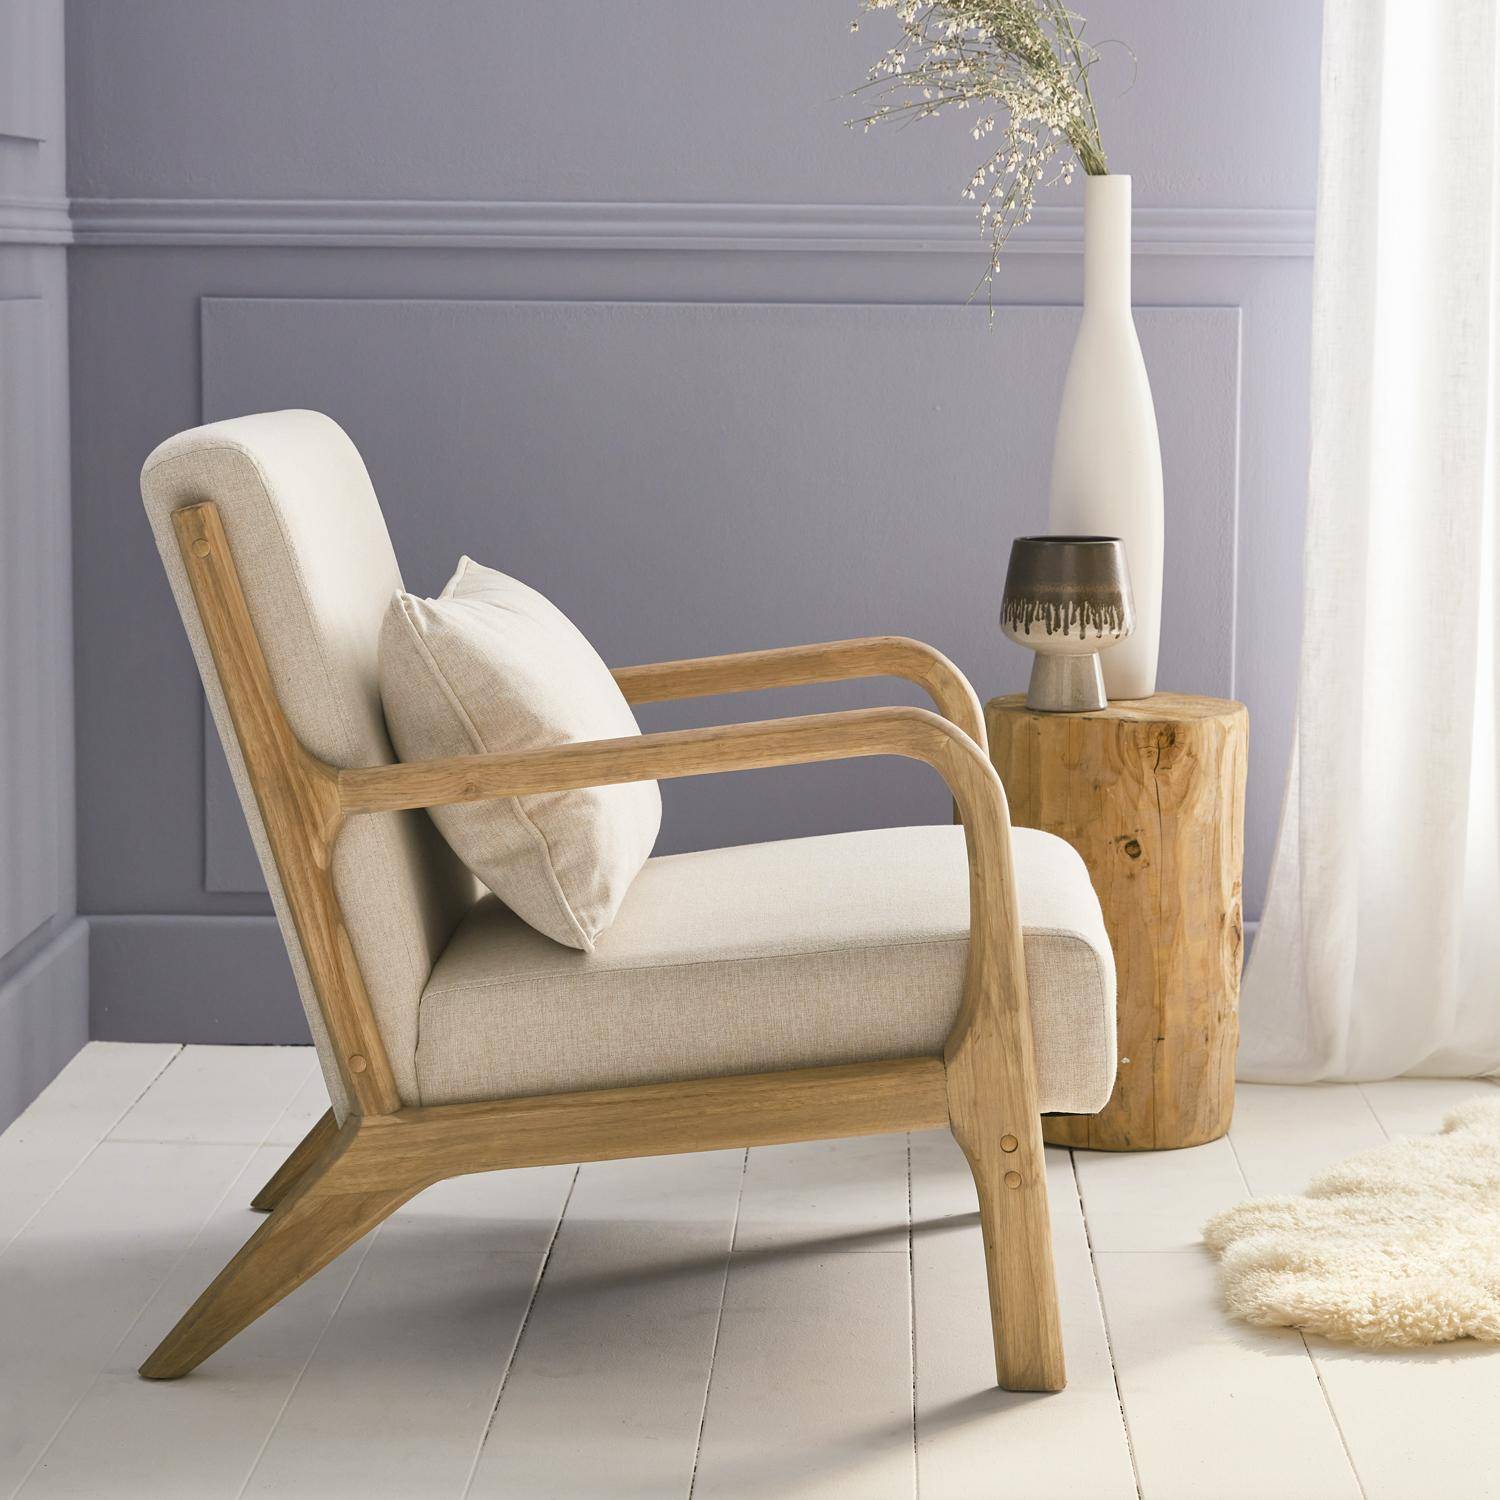 Poltrona de design em madeira e tecido, 1 assento reto fixo, pernas em bússola escandinavas, estrutura em madeira maciça, assento bege confortável,sweeek,Photo2